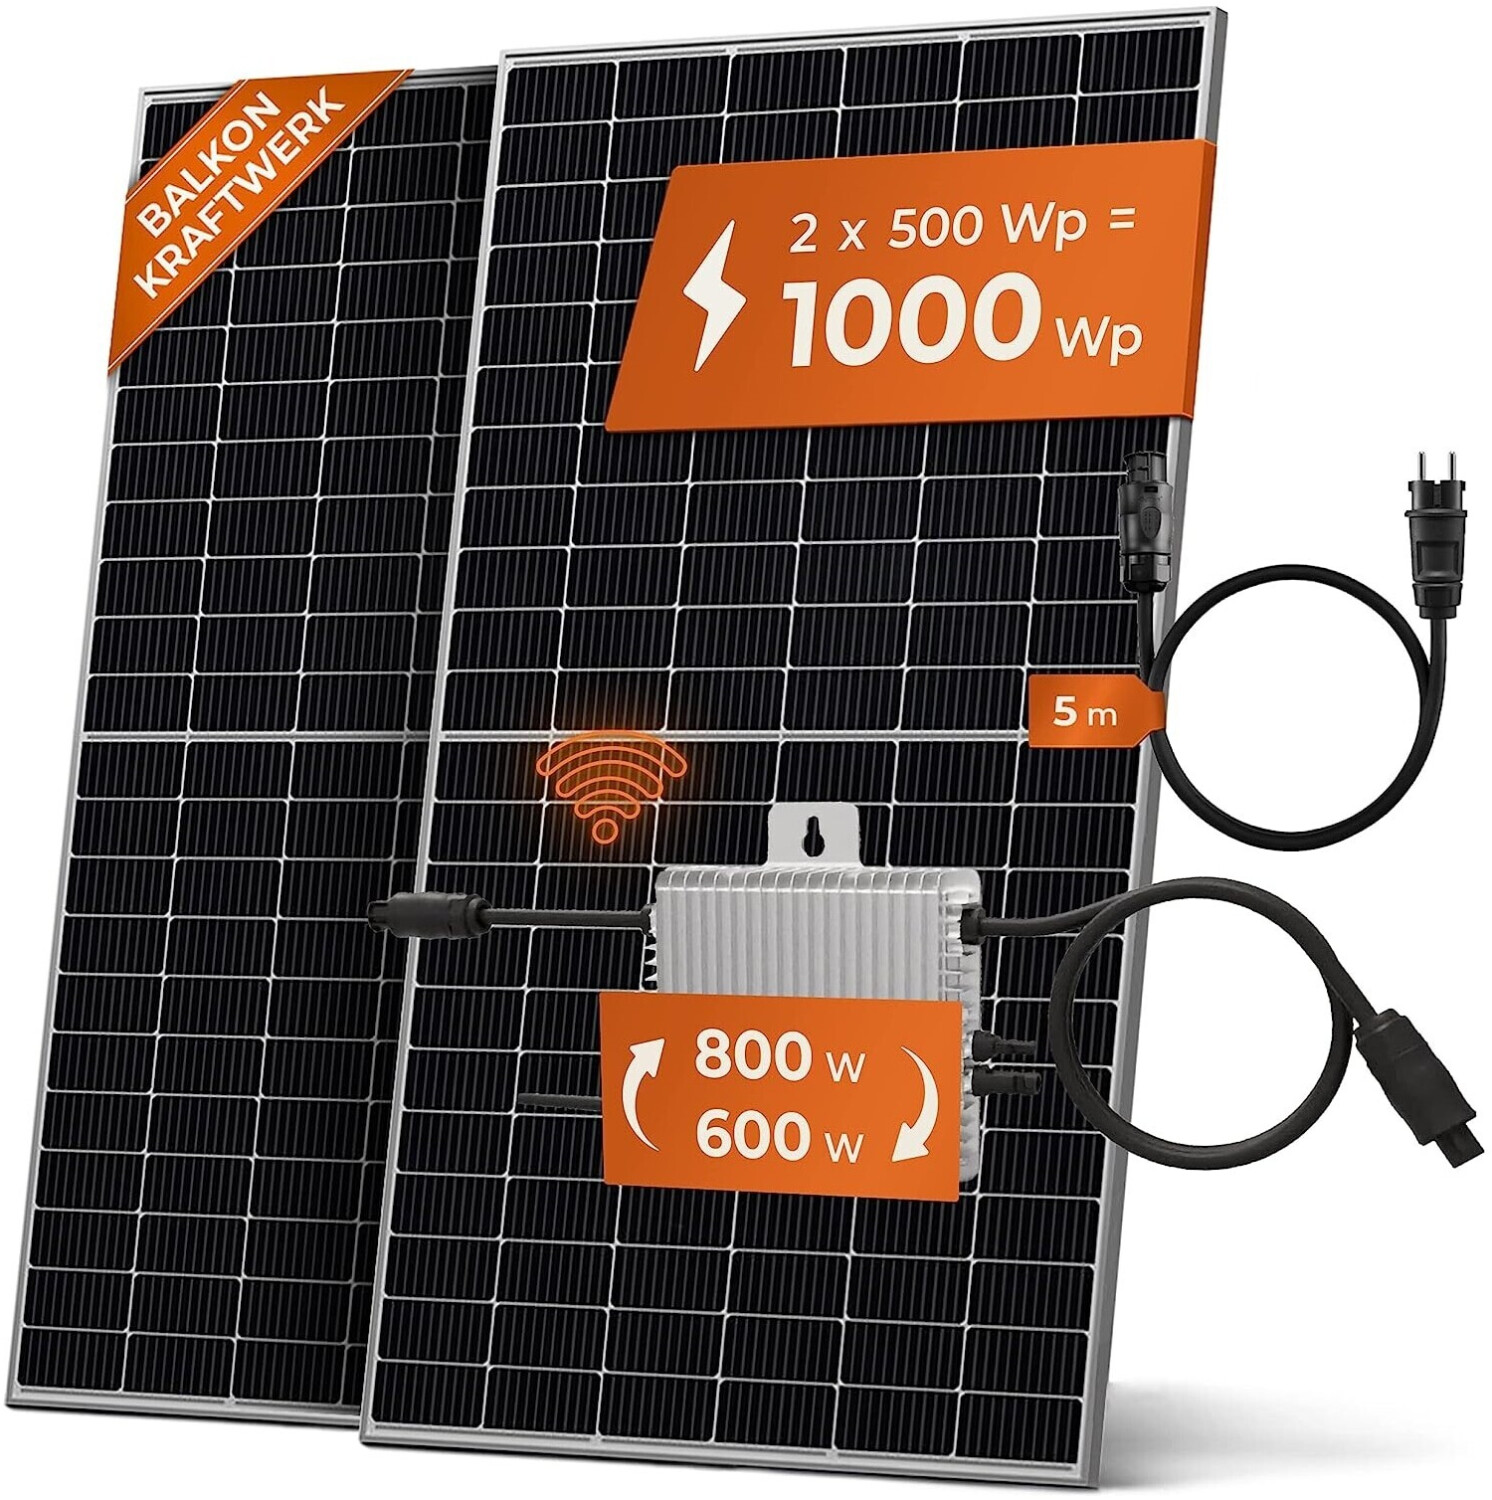 Solarway Balkonkraftwerk 1000/600W 2 x 500Wp mit Deye SUN-M80G3  Wechselrichter ab 649,99 €